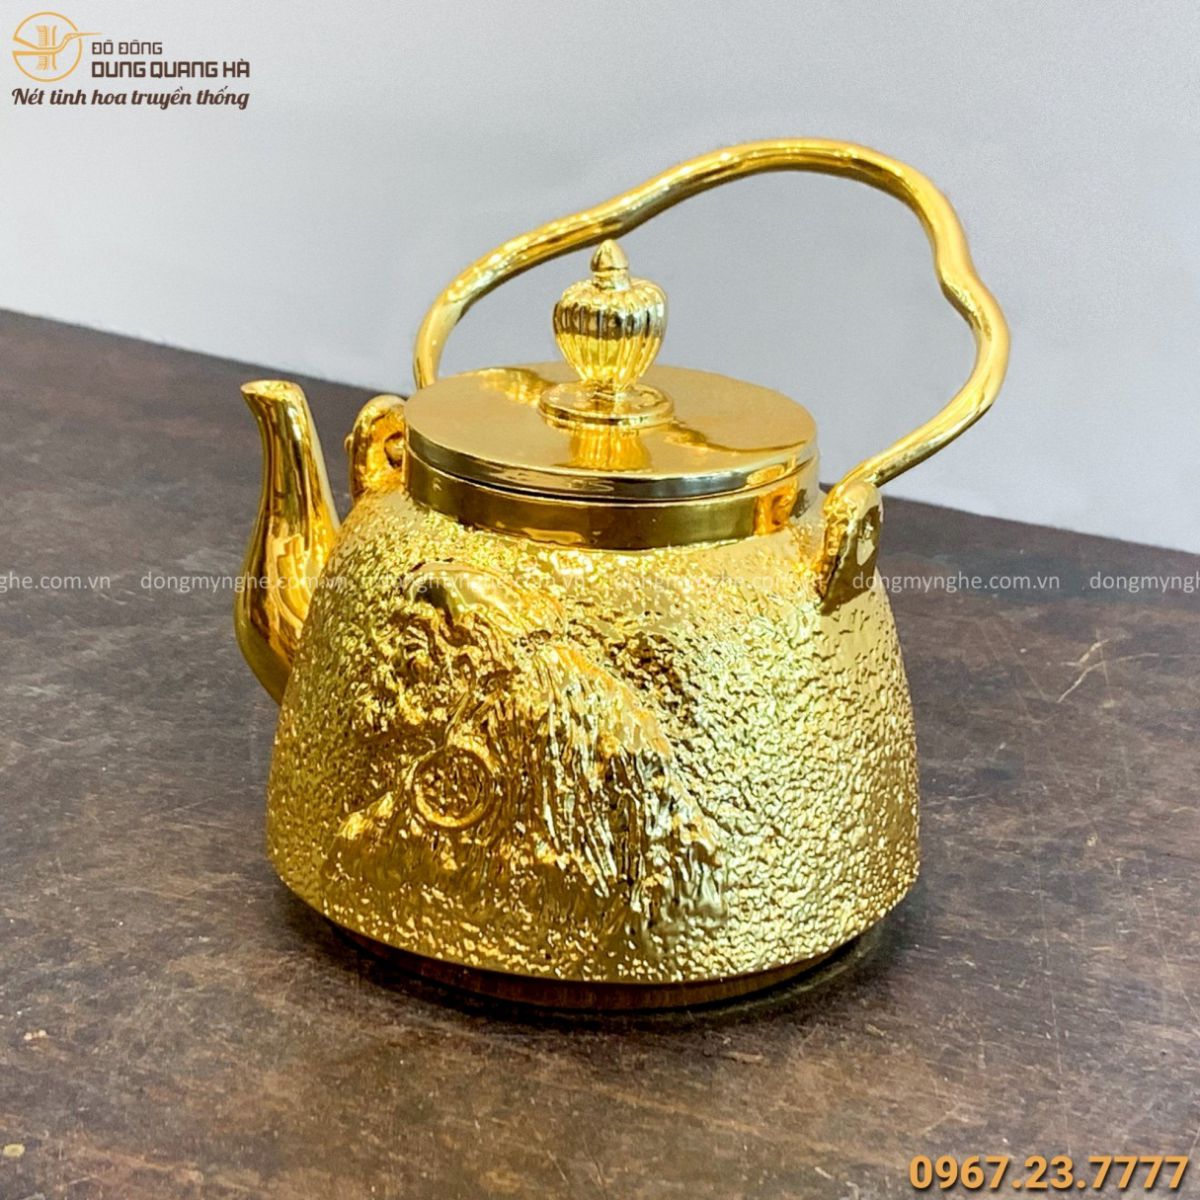 Ấm trà đẹp bằng đồng mạ vàng 24k hoa văn độc đáo tinh xảo